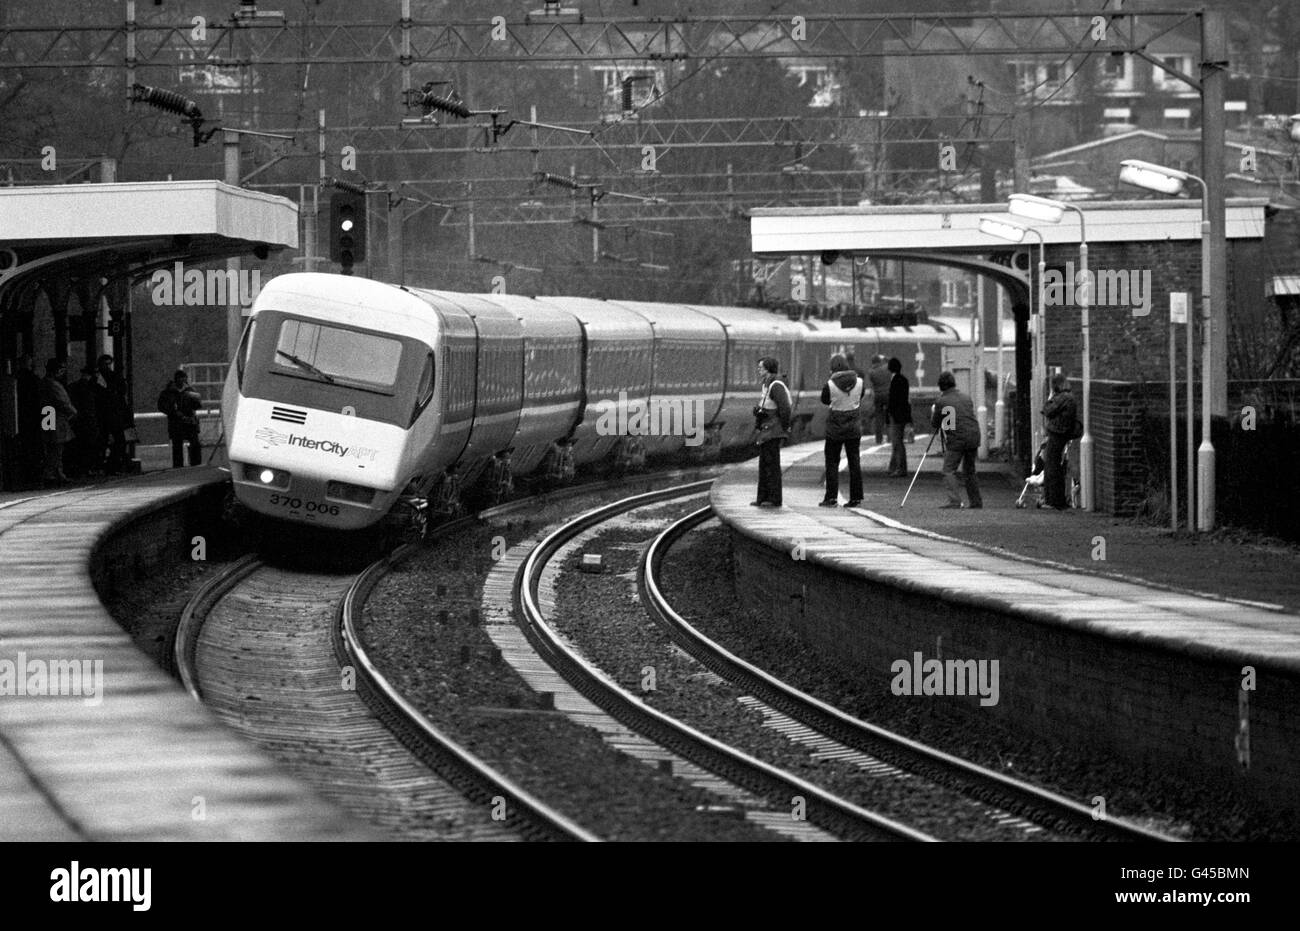 L'Advanced Passenger Train, il treno basculante della British Rail che è stato successivamente respinto dalla rete. È stato annunciato che i treni ad alta velocità inclinabili potrebbero tornare sui principali servizi Londra-Scozia nell'ambito di un regime di 1.5 miliardi di euro. * 14/2/2001: Il primo treno ad inclinazione elettrica del paese dagli anni '80 è andato in prova, su una pista vicino a Melton Mowbray. E' il primo dei 55 treni espressi a otto e nove carrozze Pendallino che Virgin Railways opererà sulla linea principale della costa occidentale tra Londra Euston, Manchester e Scozia. Prima della flotta di 1.25 miliardi di treni, in grado di aumentare la velocità Foto Stock